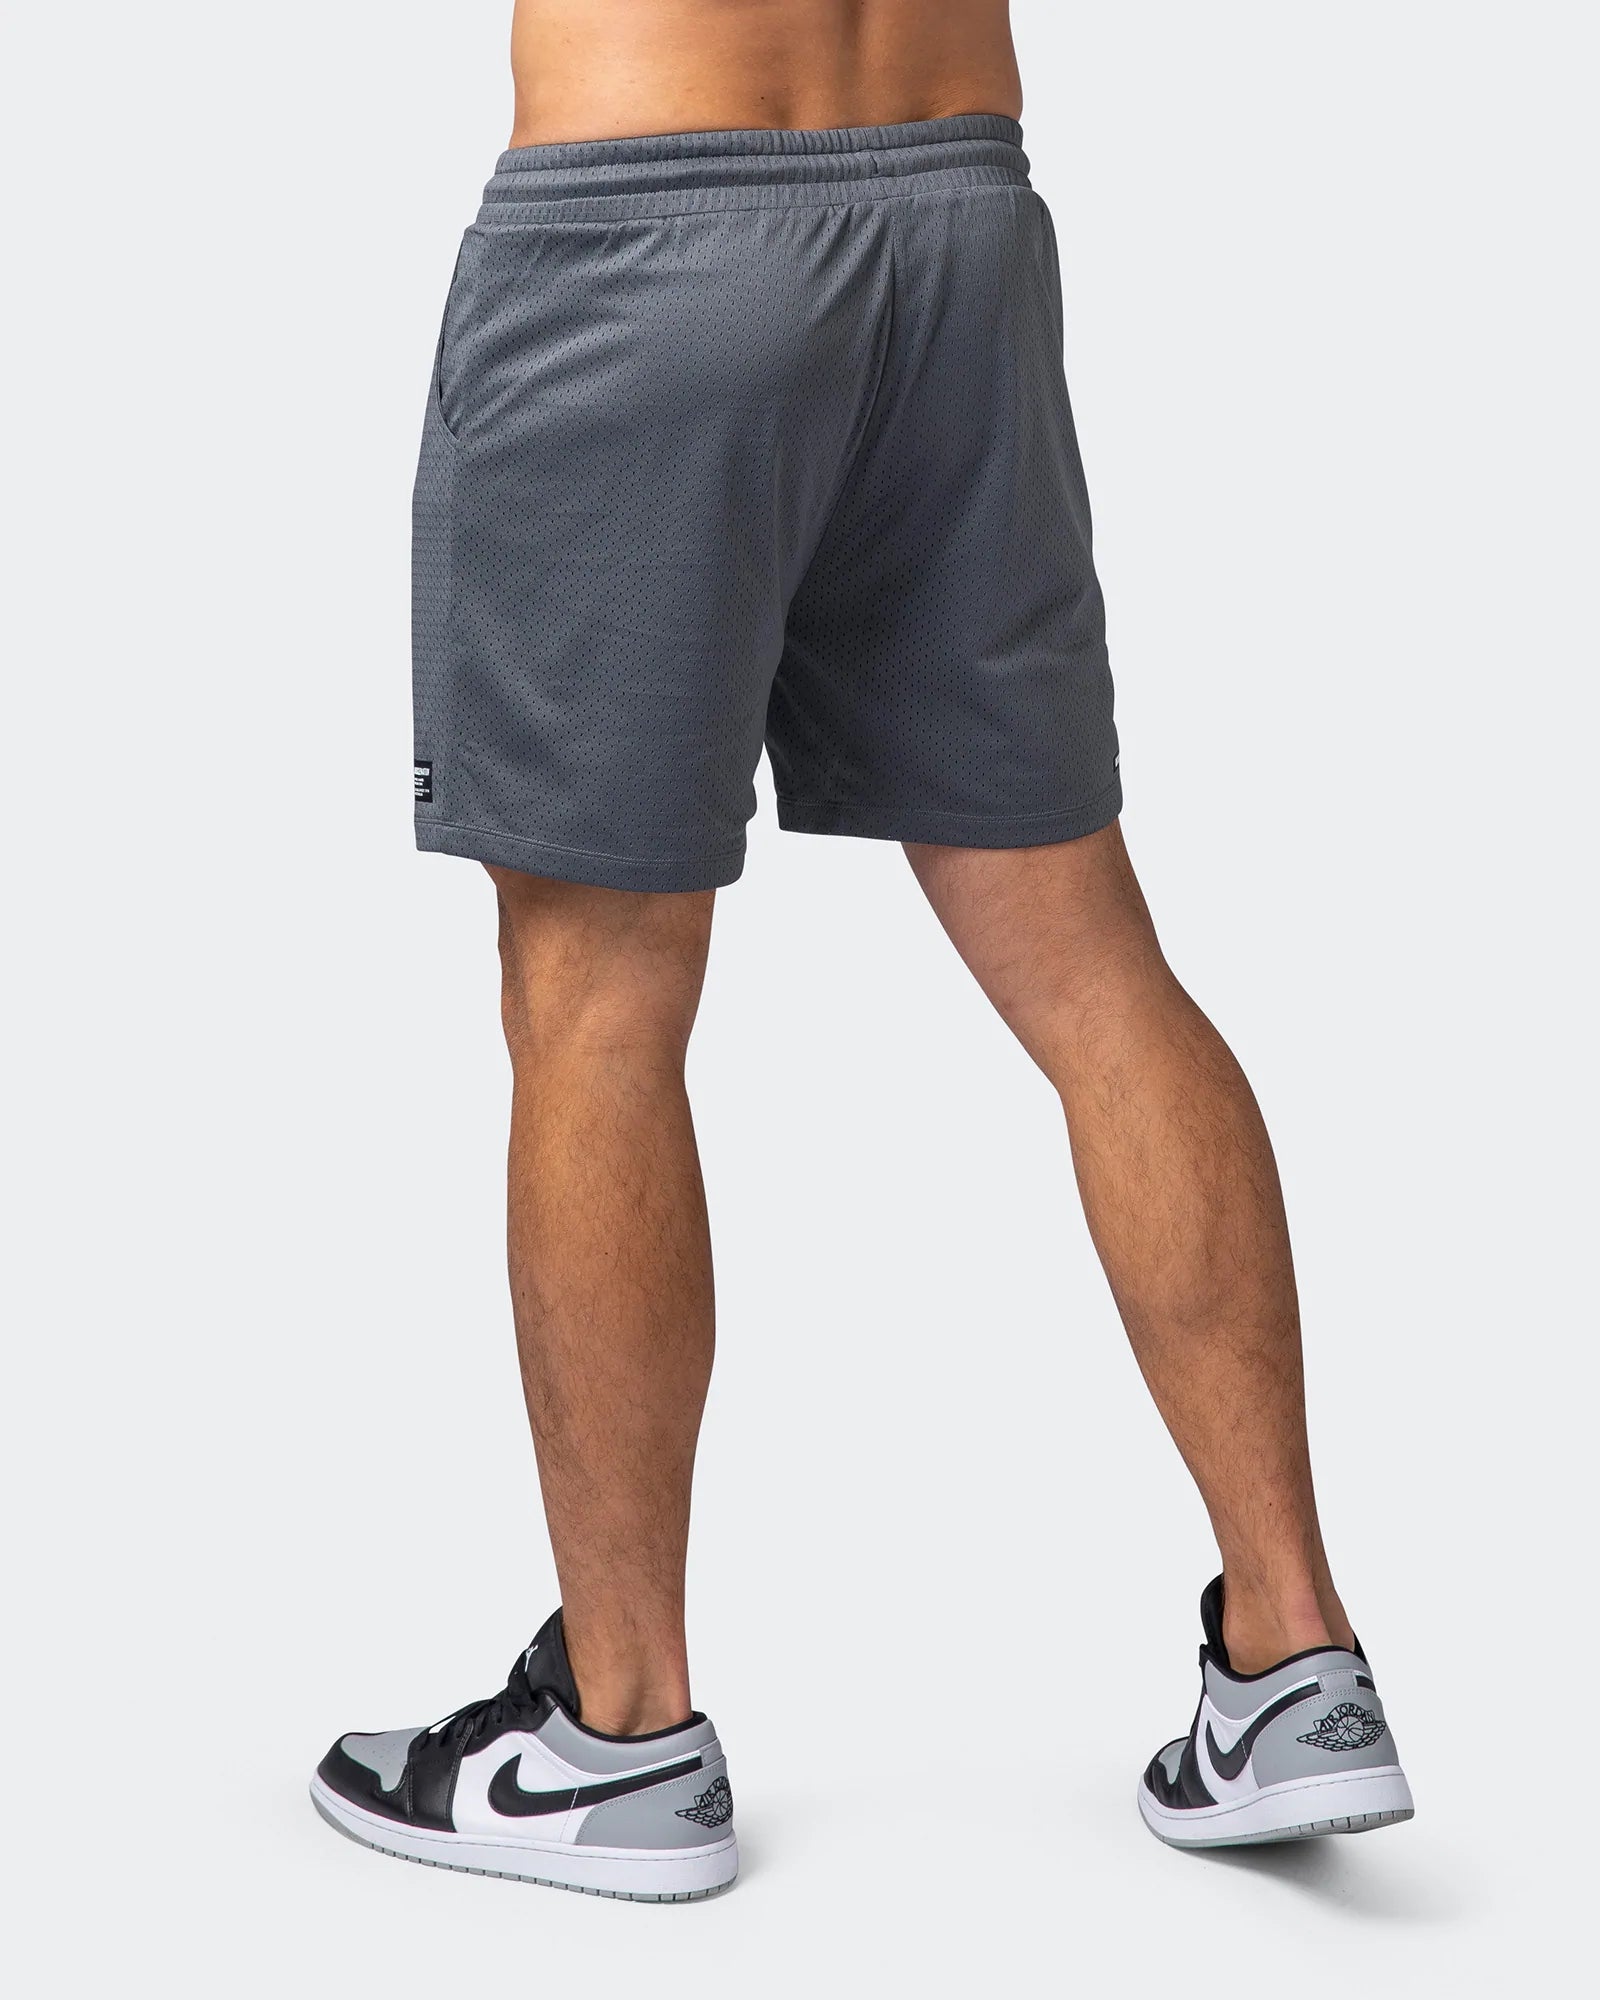 musclenation Shorts Lay Up Shorts - Tornado